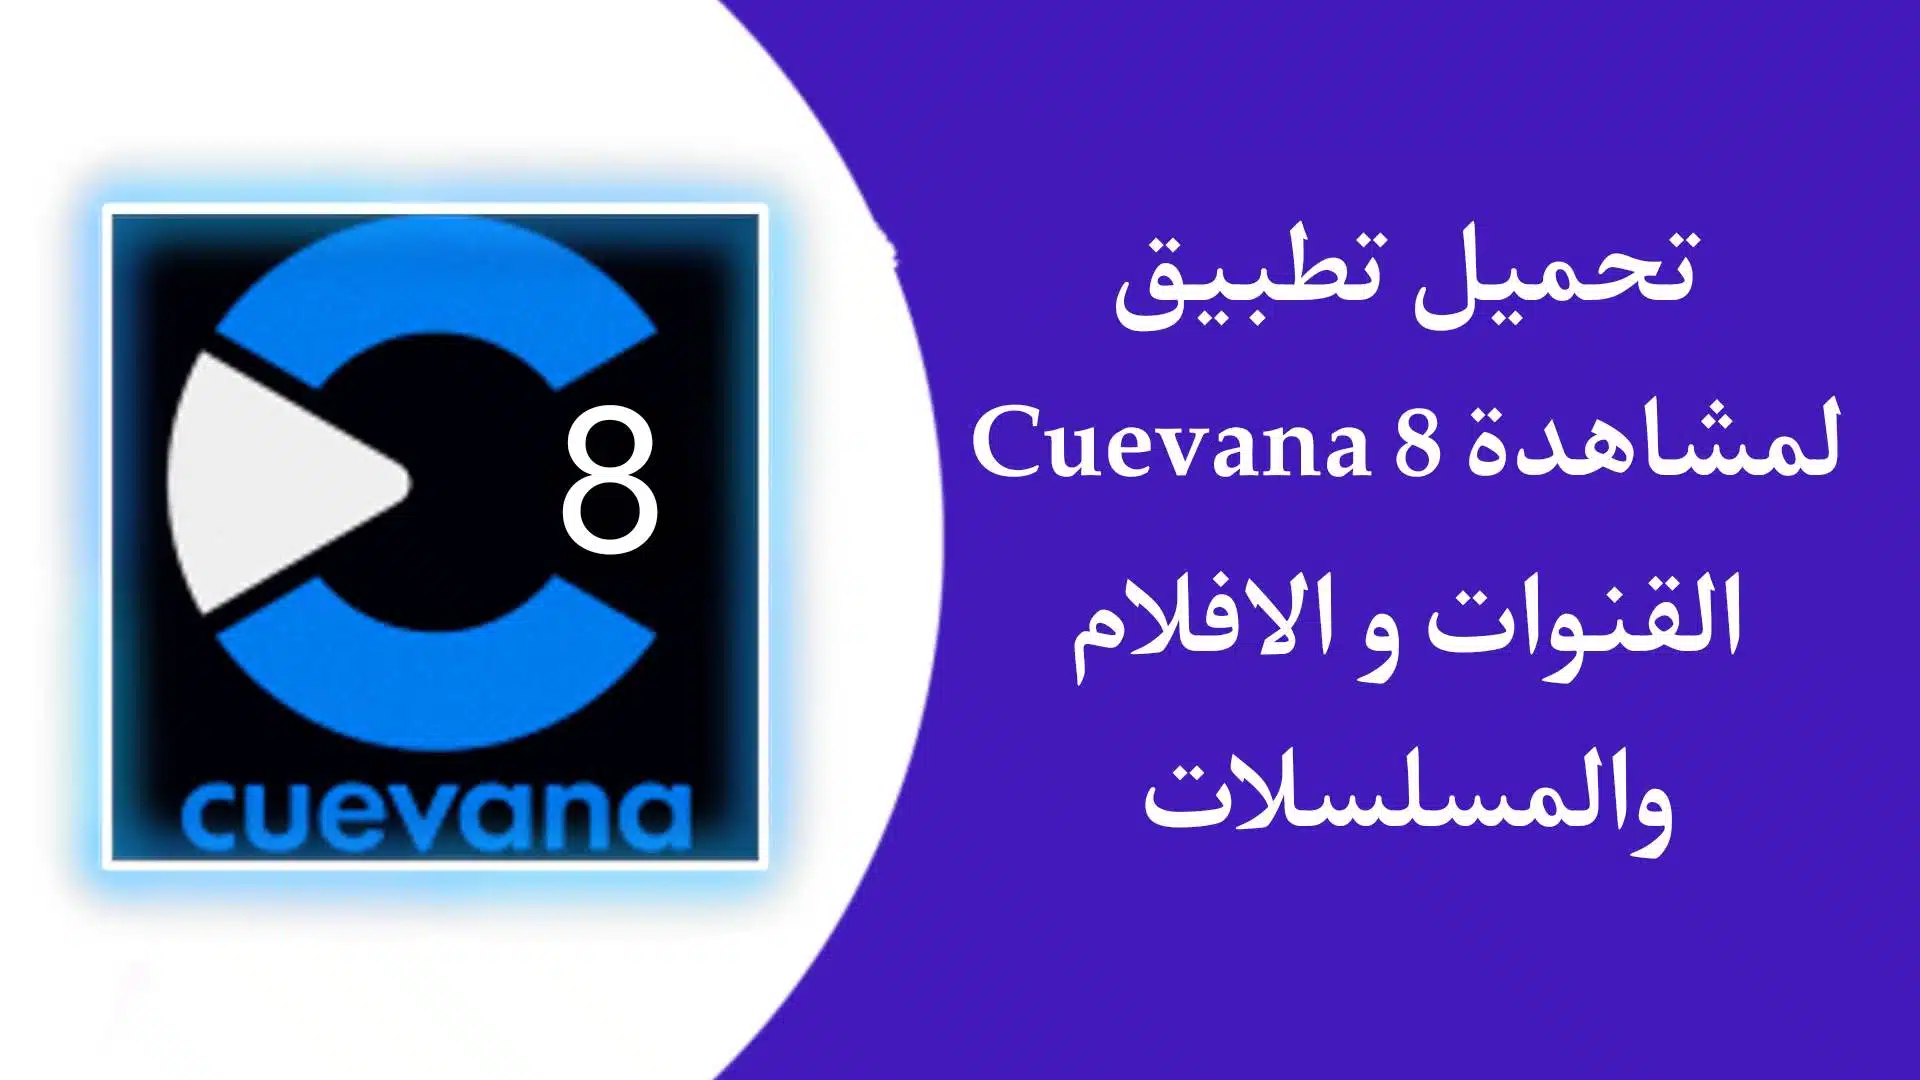 تطبيق Cuevana 8 لمشاهدة القنوات الناقلة